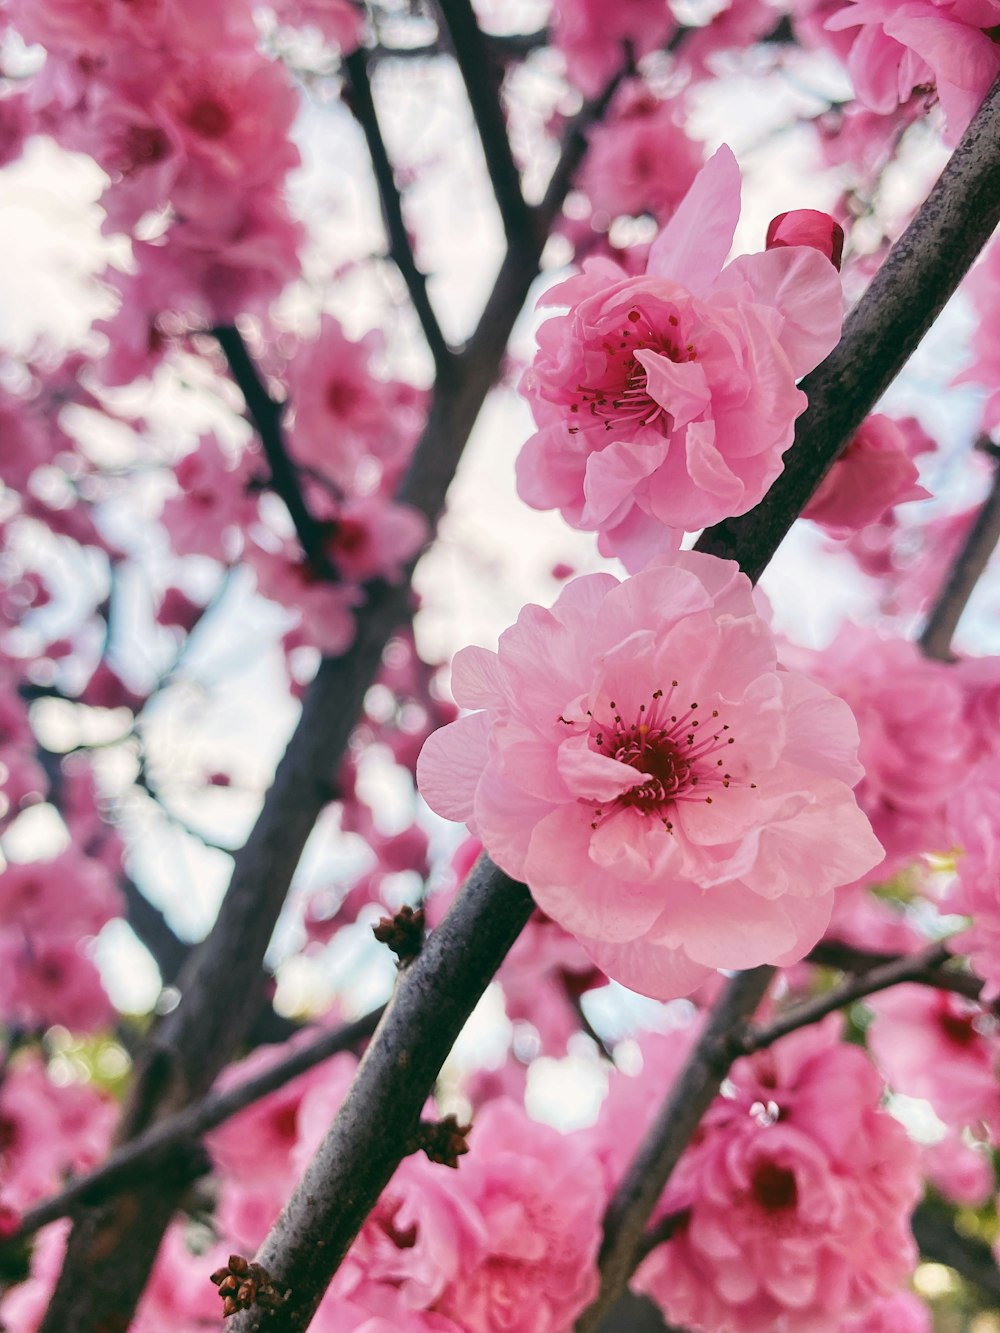 I fiori rosa sbocciano su un albero